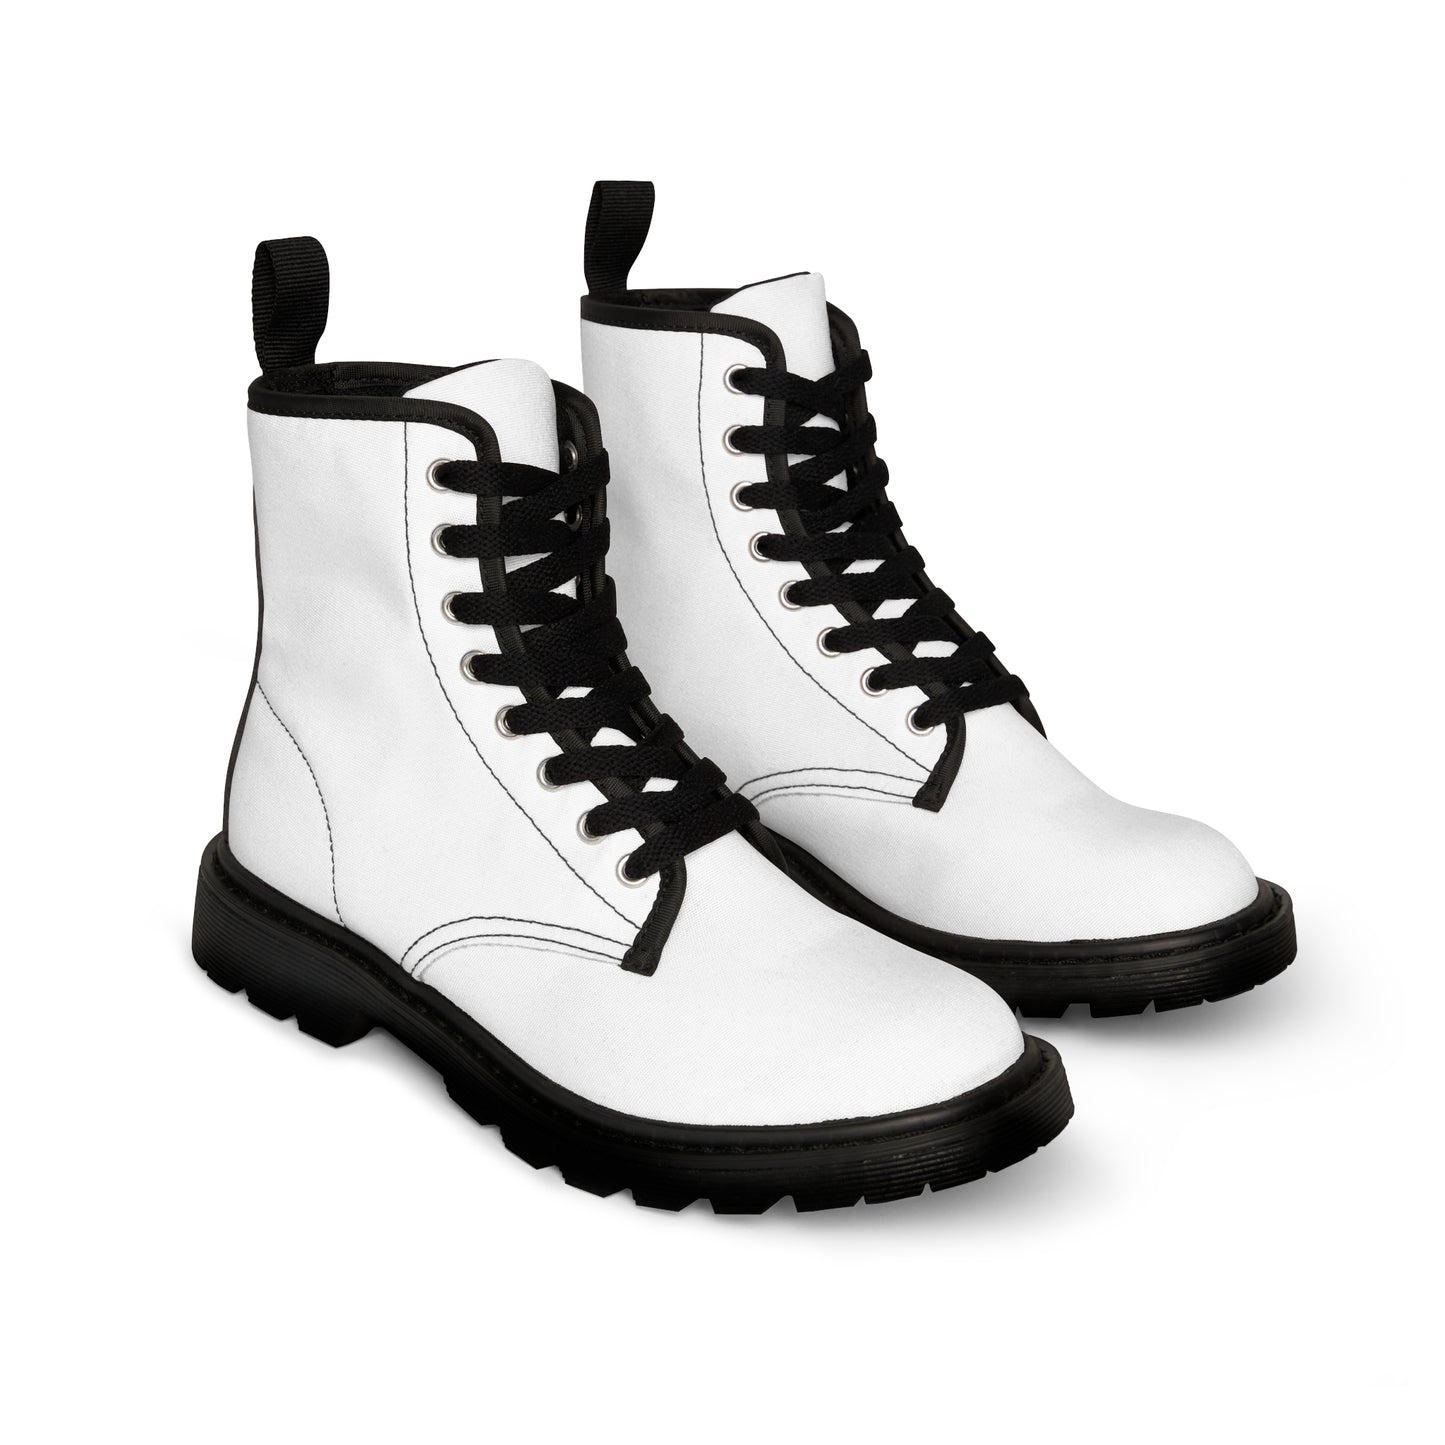 Men's Canvas Boots - Template US 10.5 Black sole